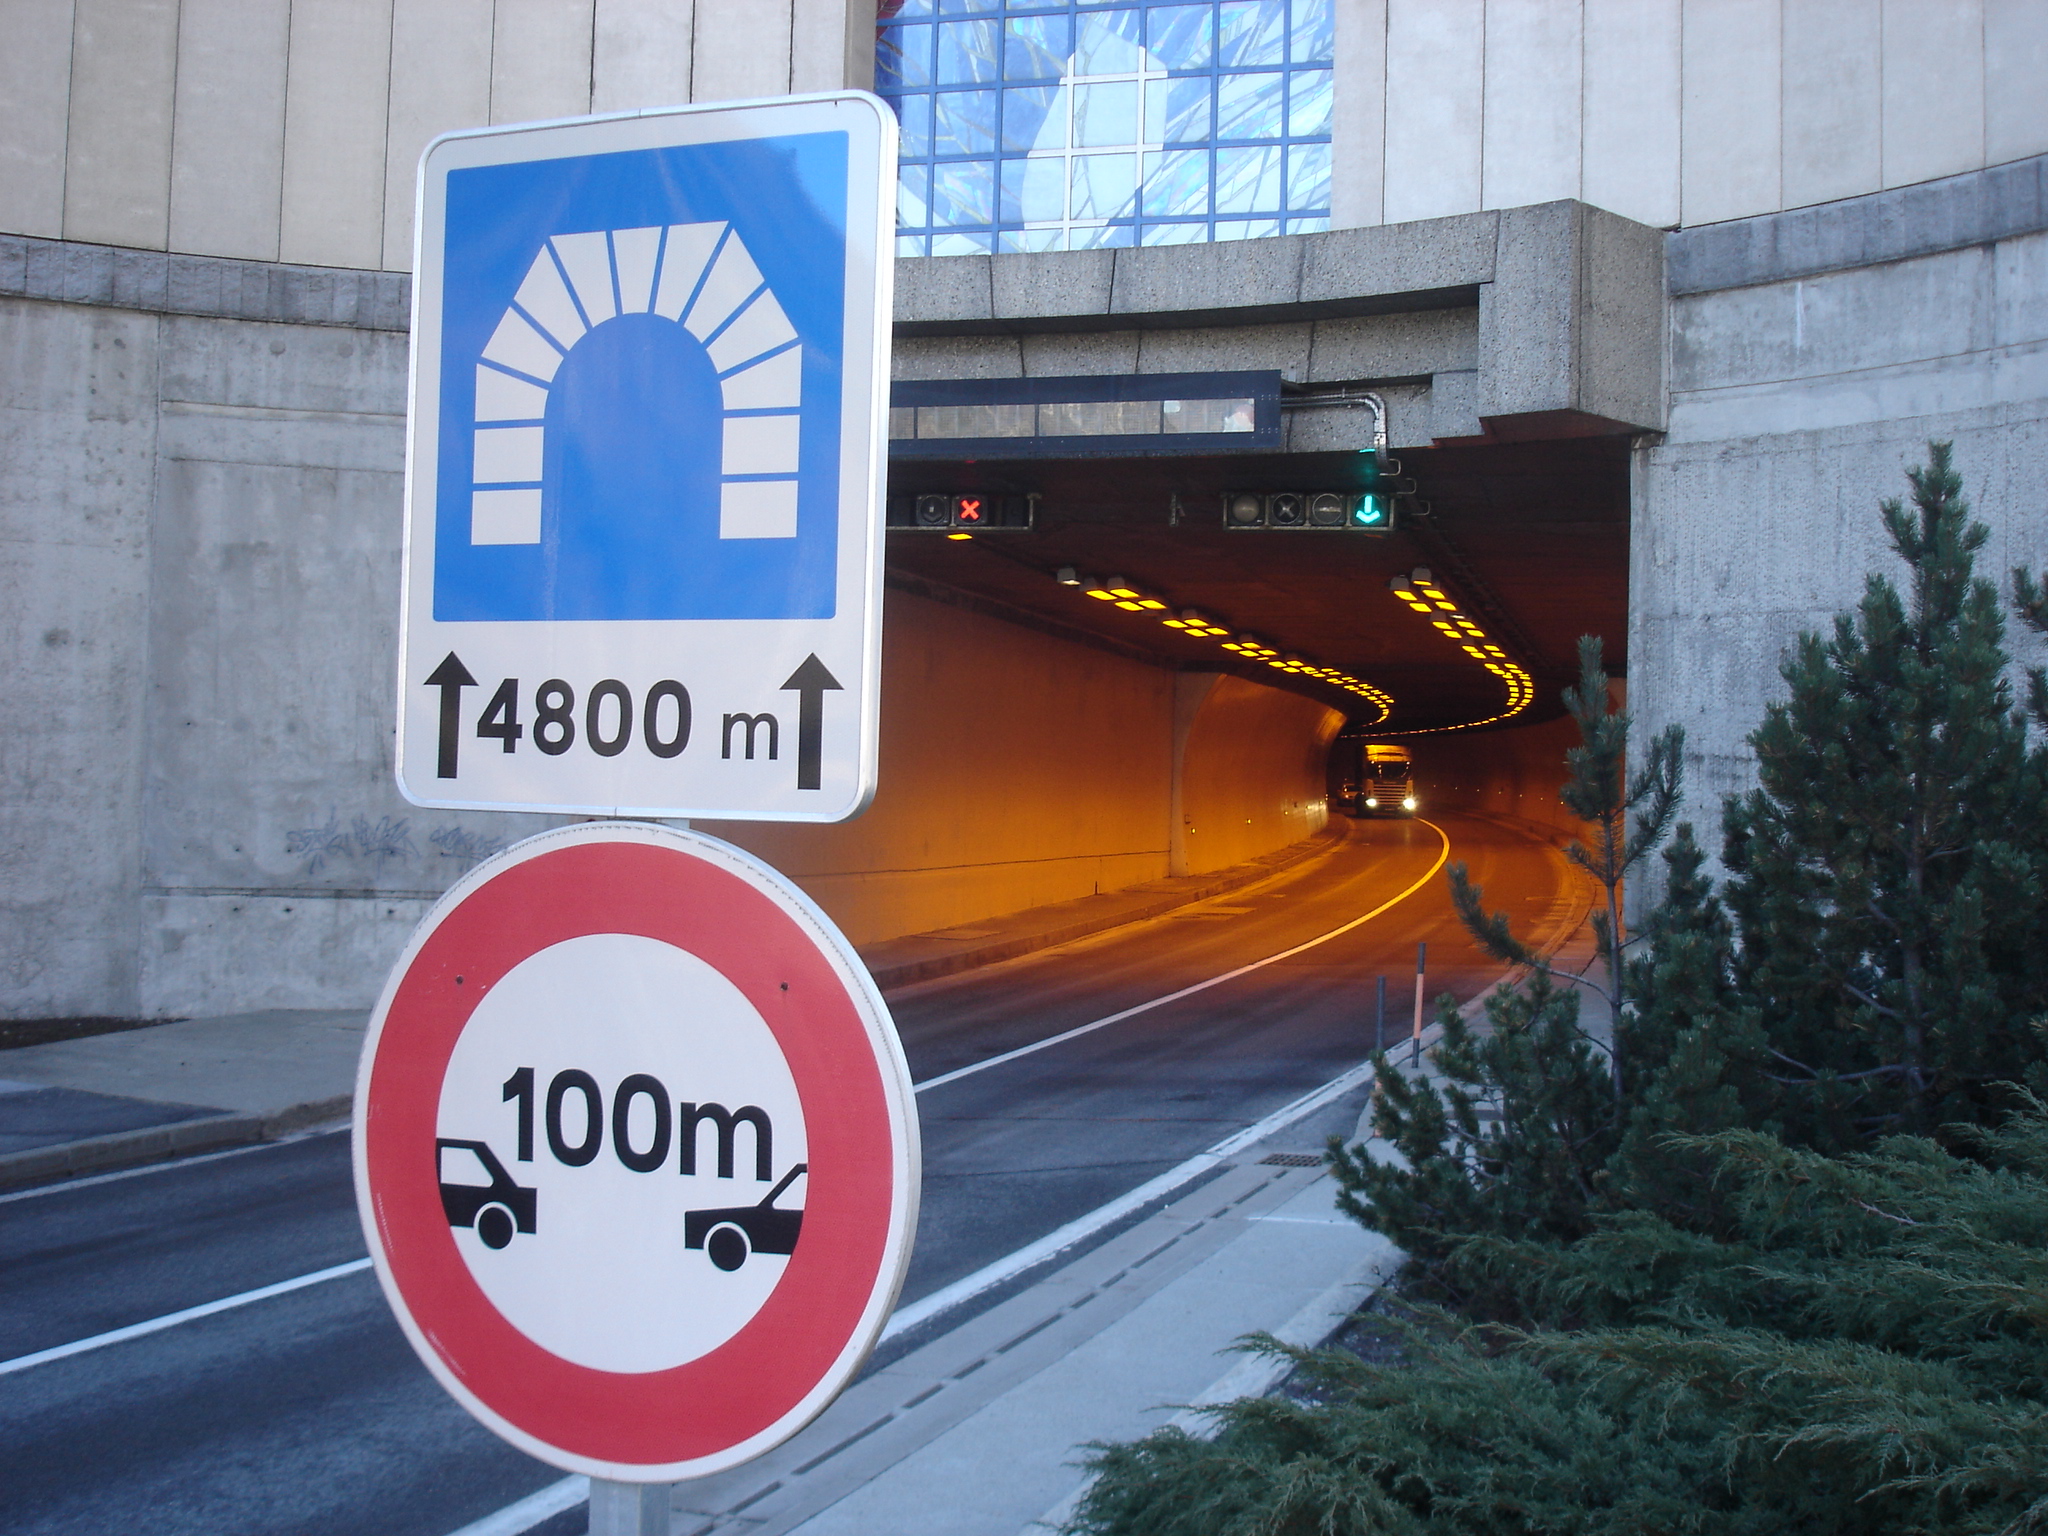 Fig. 2 : Signalisation indiquant la longueur du tunnel et la distance à respecter entre véhicules